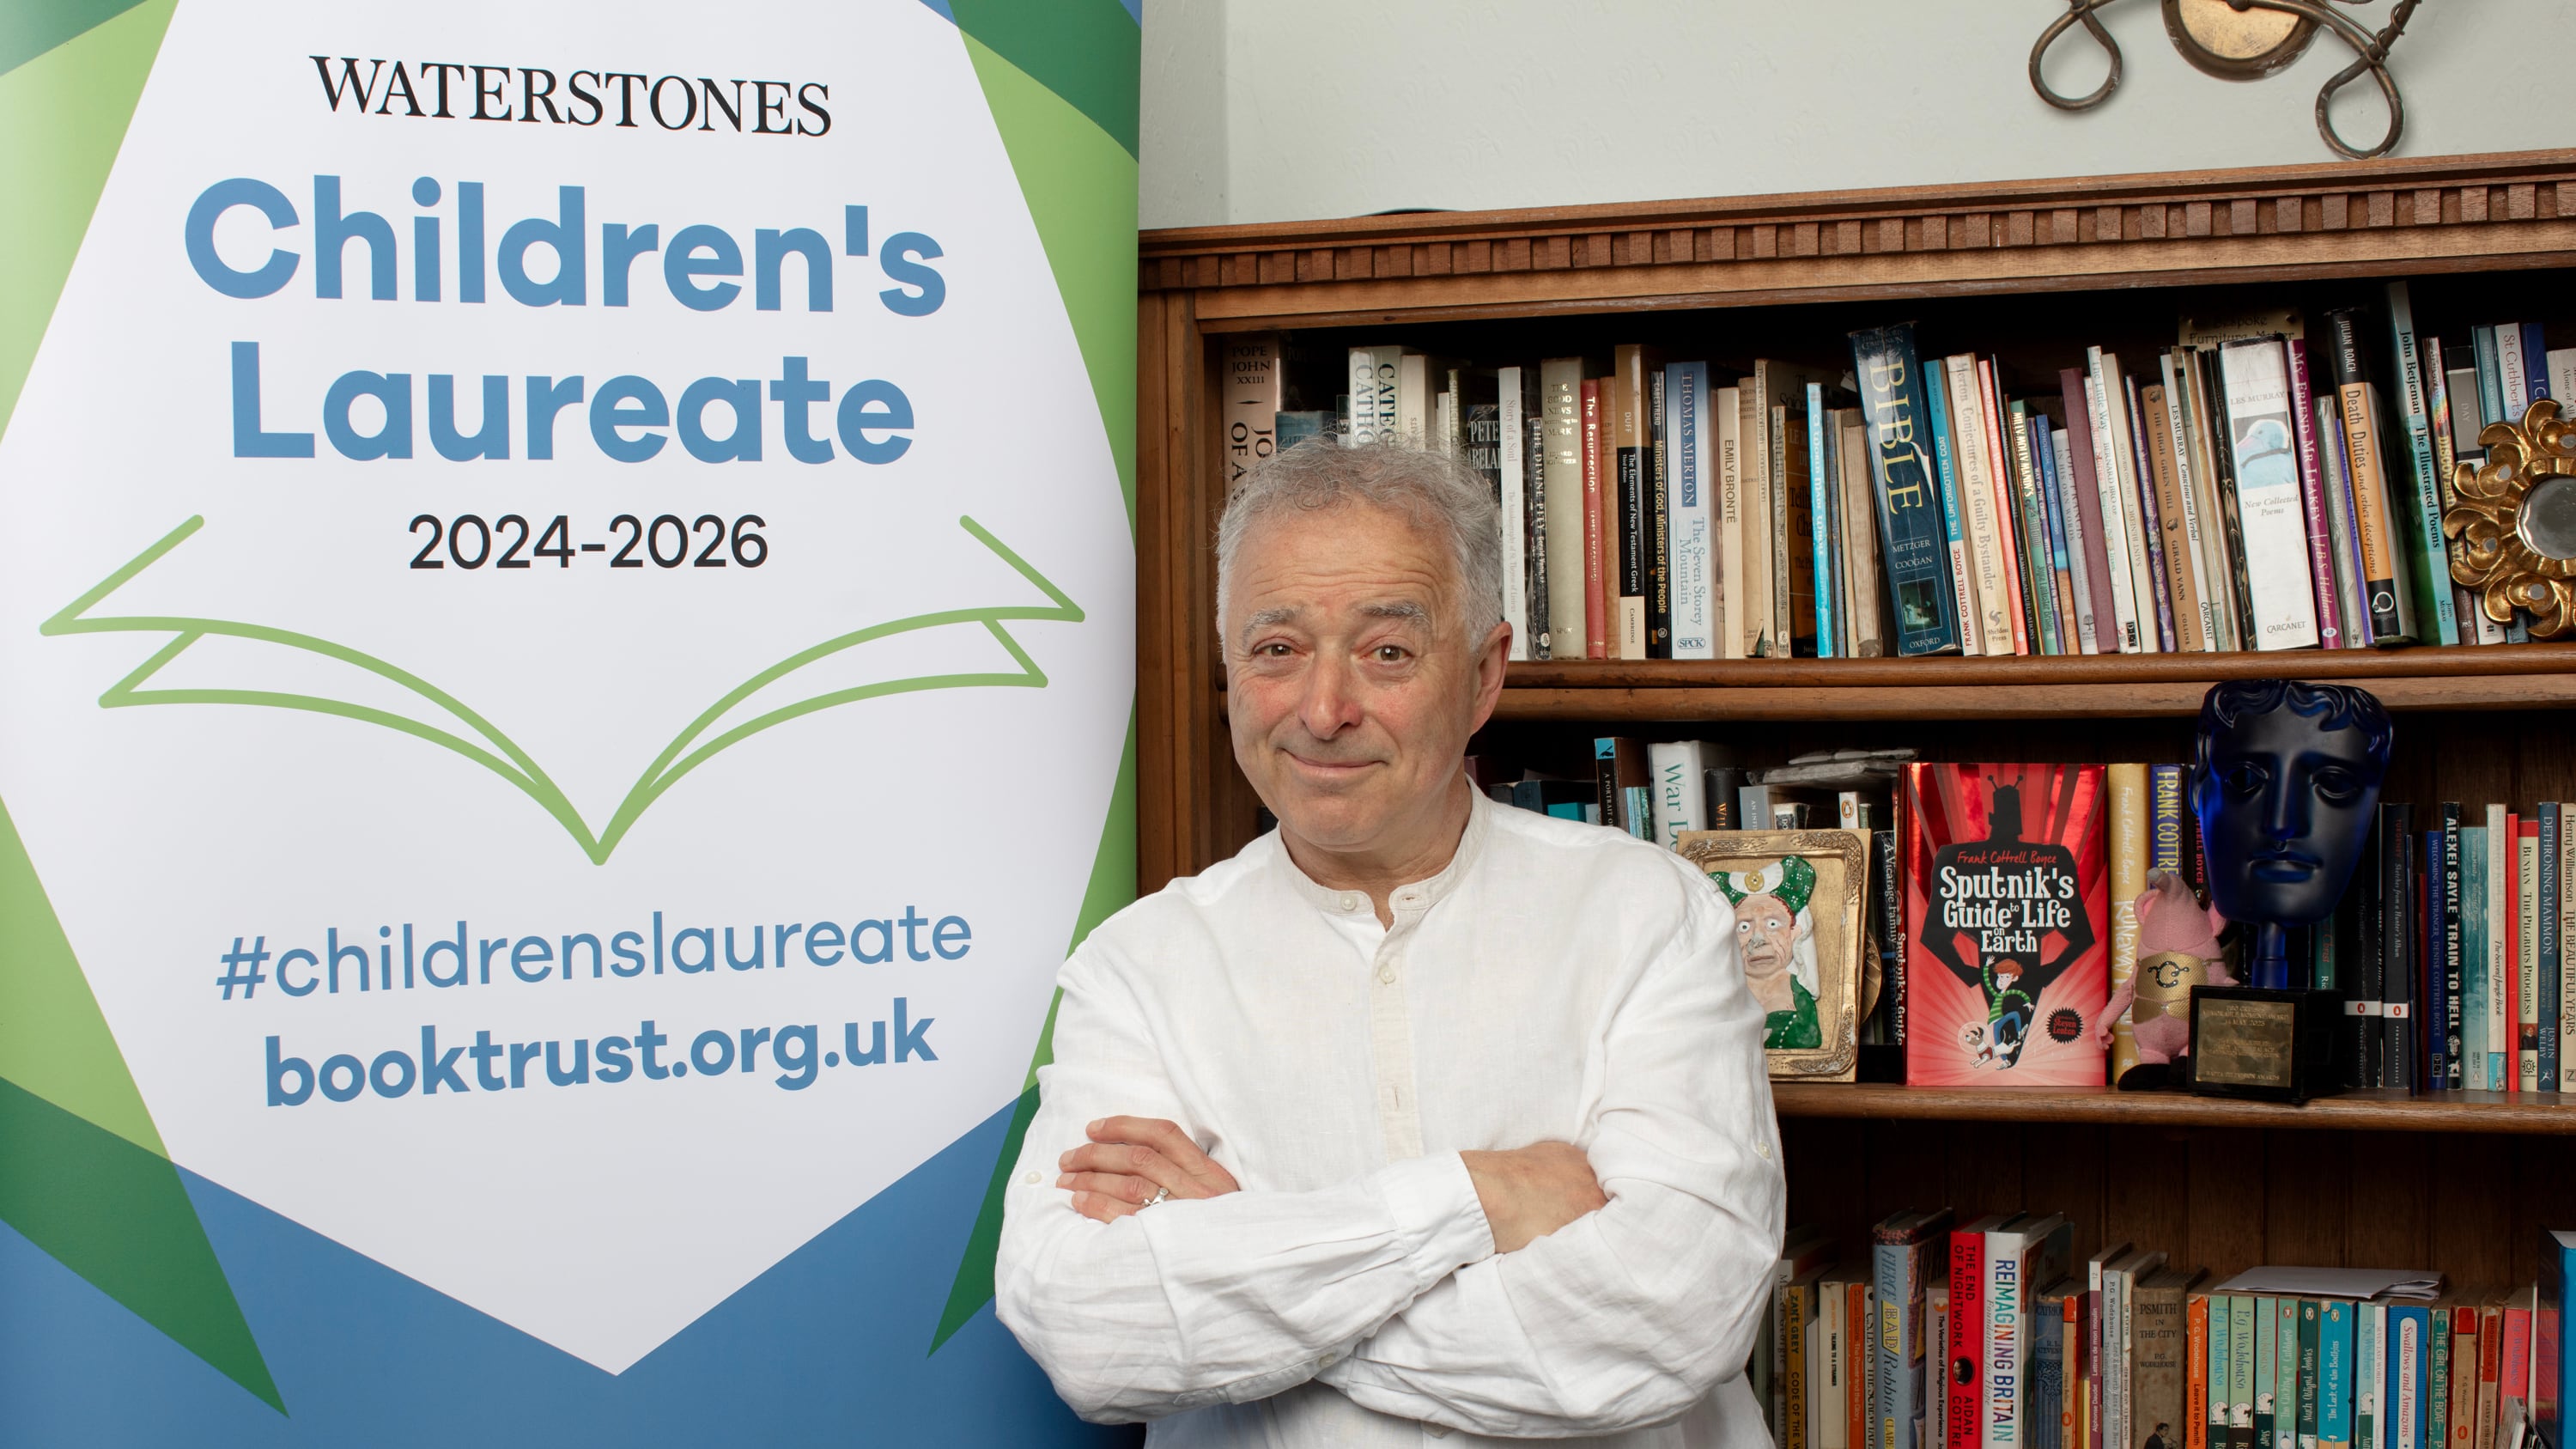 Frank Cottrell-Boyce has been named the new Waterstones Children’s Laureate